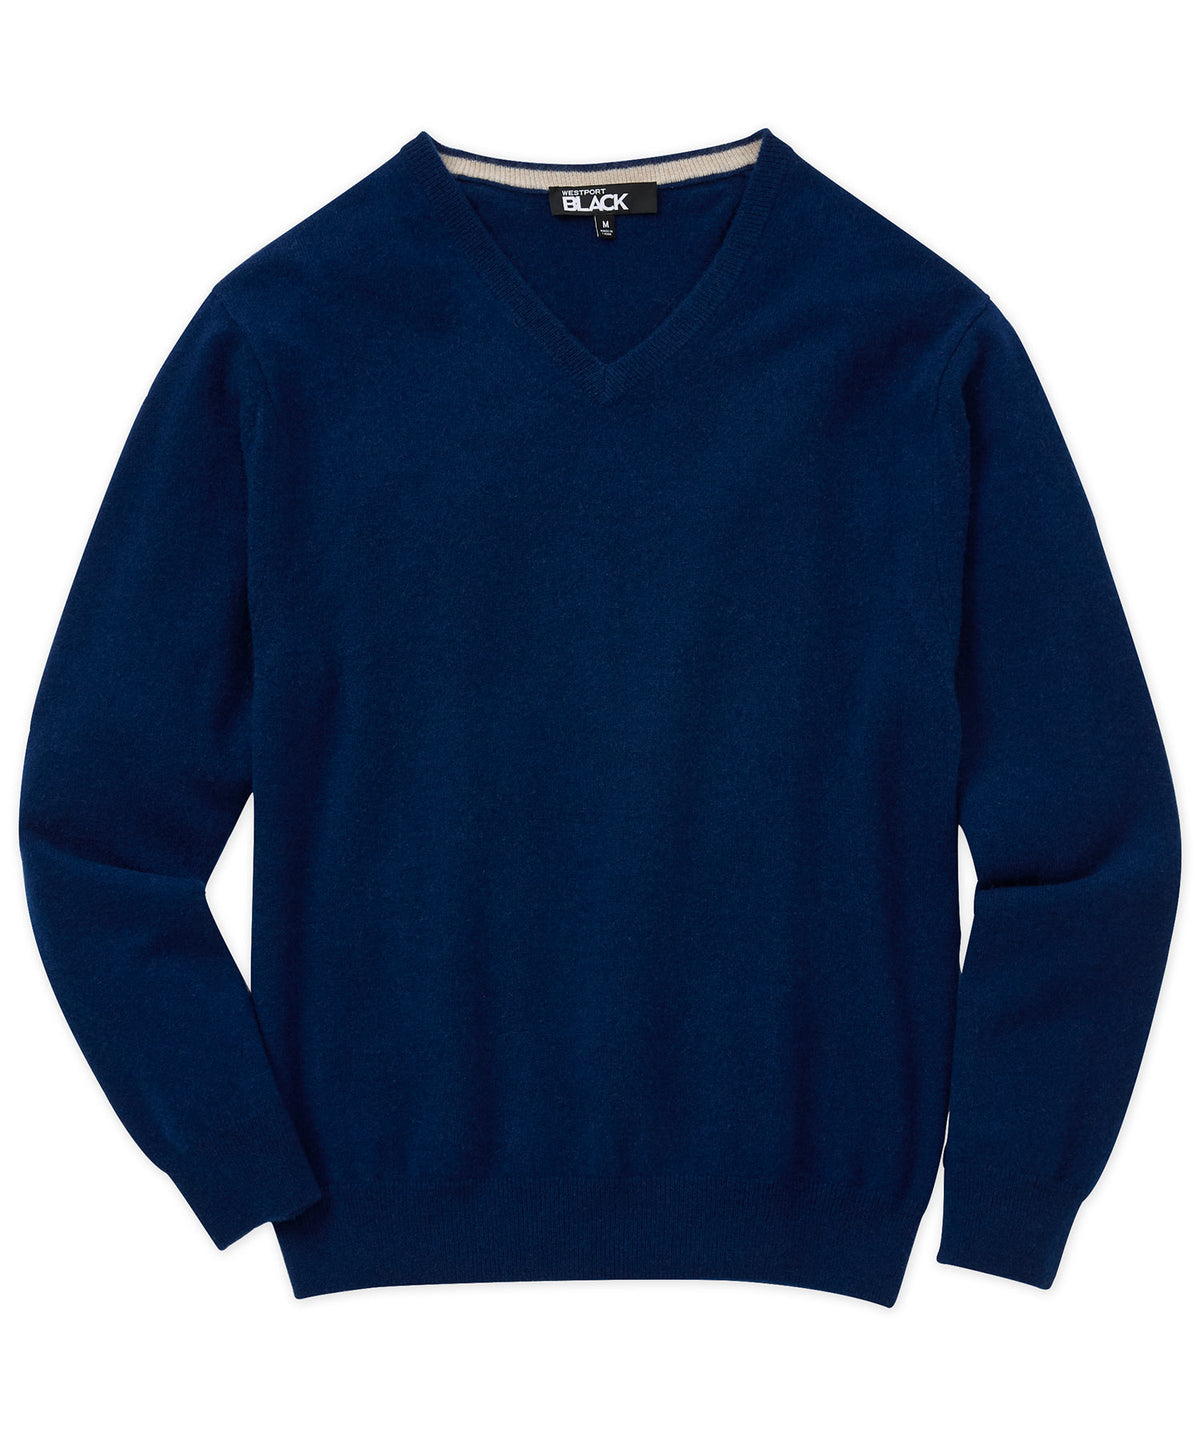 Westport Black Greenwich Cashmere V-Neck Sweater